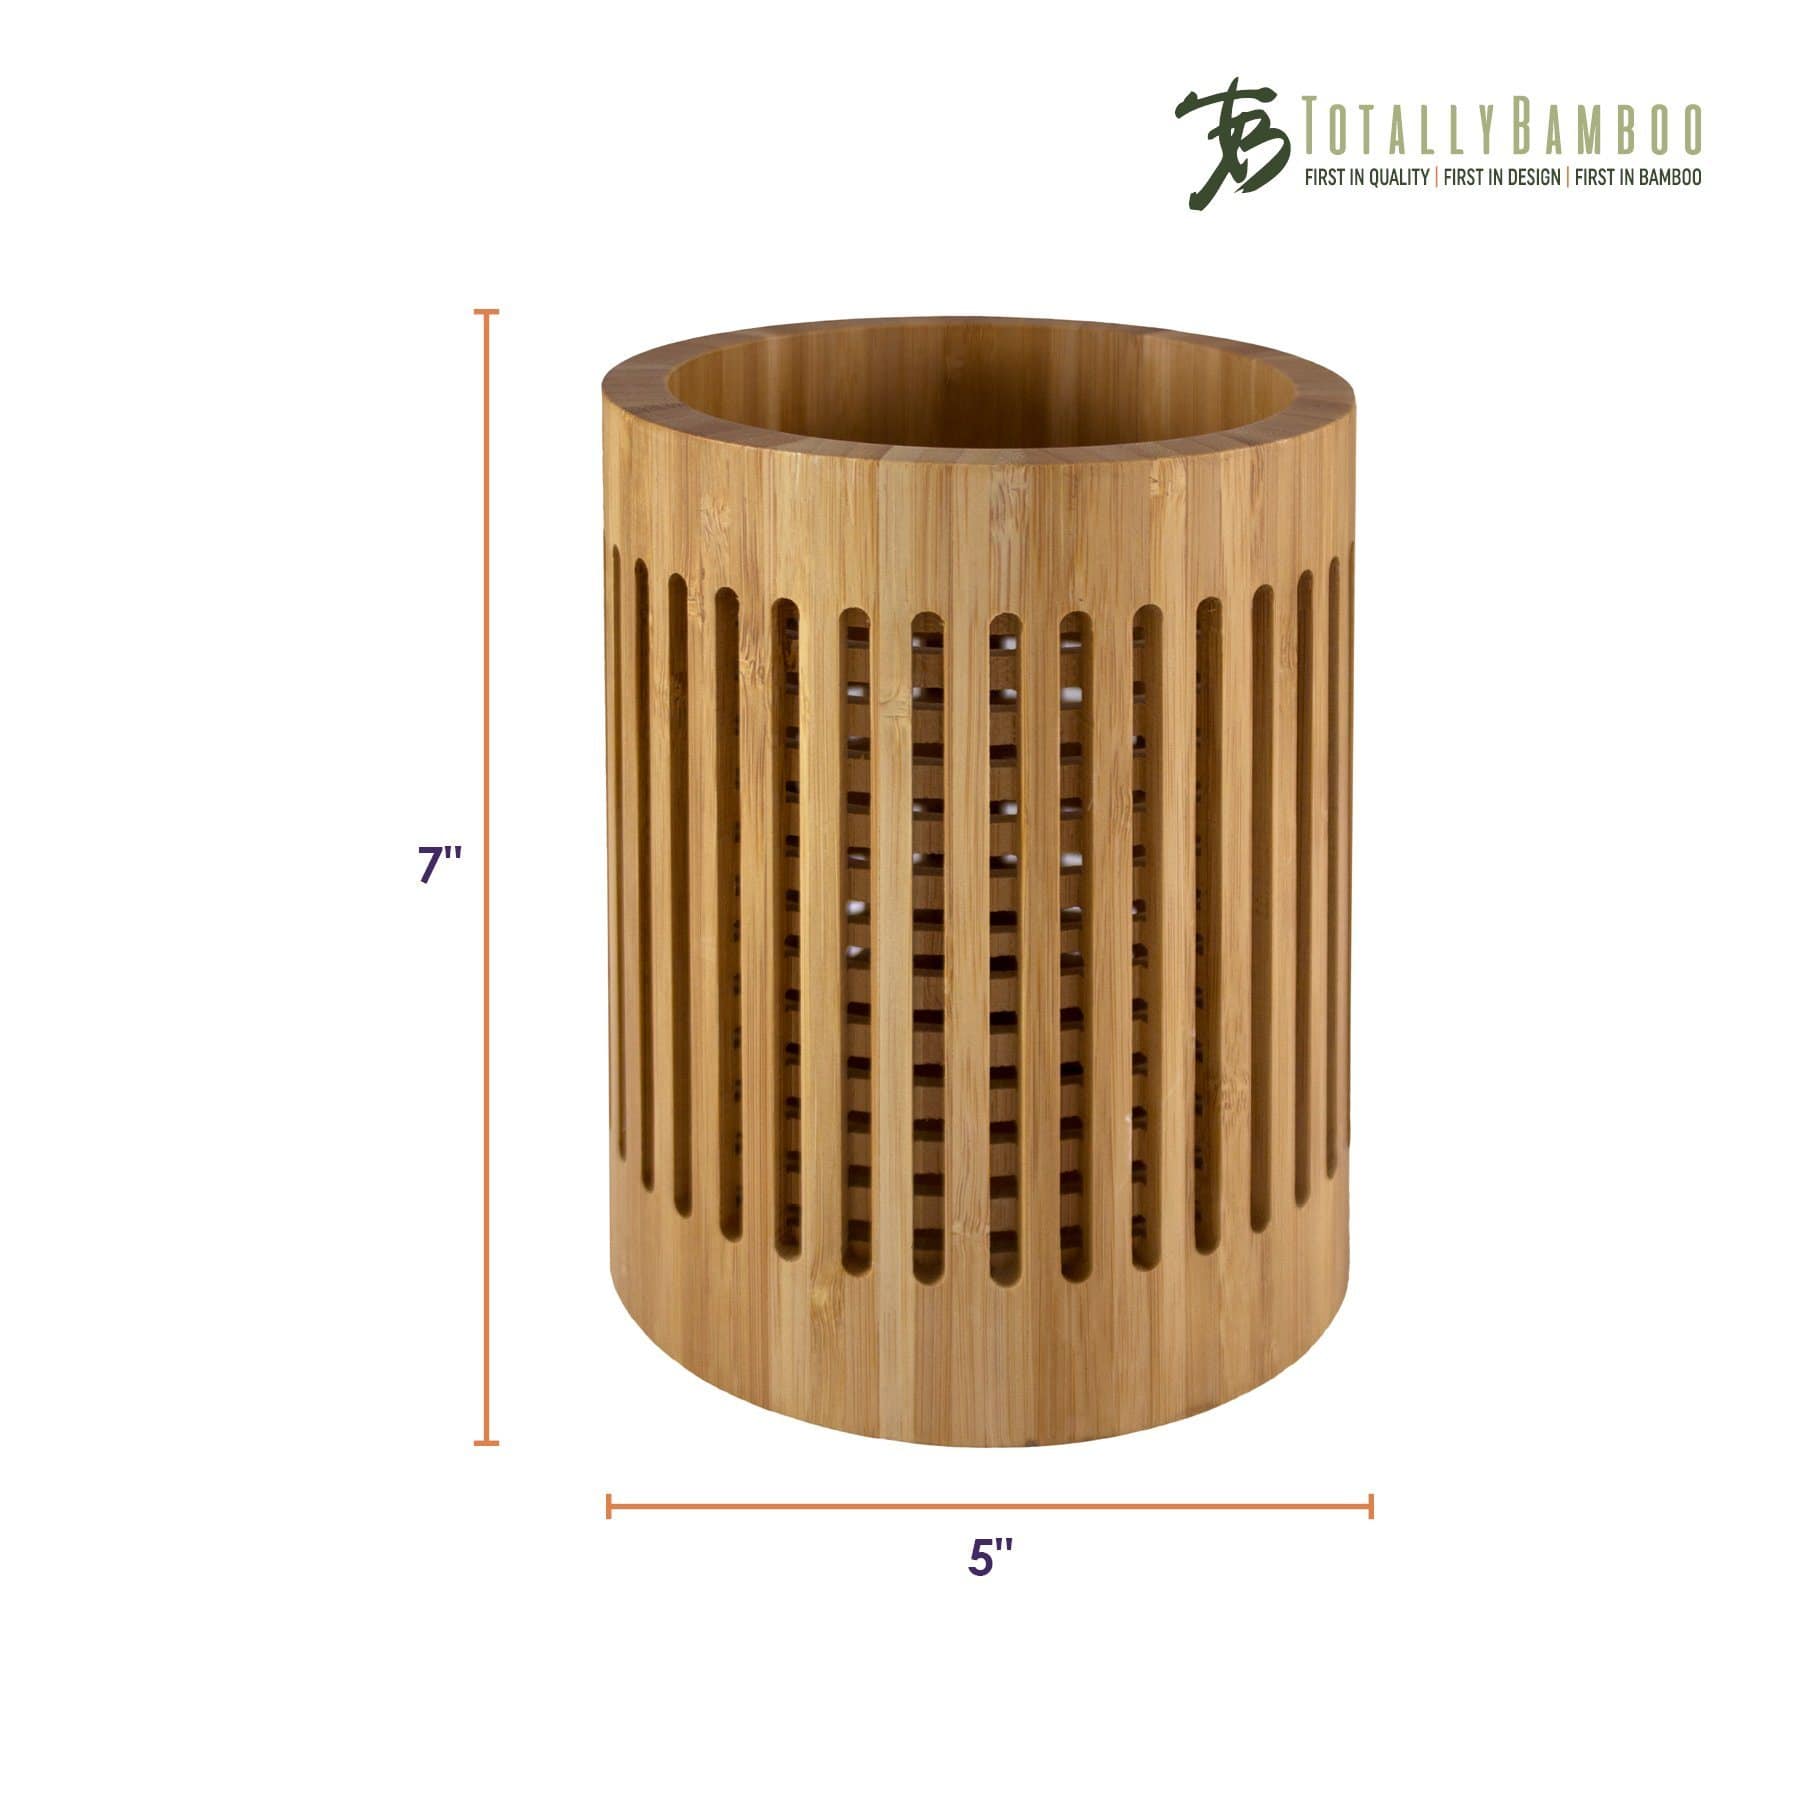 https://totallybamboo.com/cdn/shop/products/lattice-kitchen-utensil-holder-totally-bamboo-902017.jpg?v=1627941098